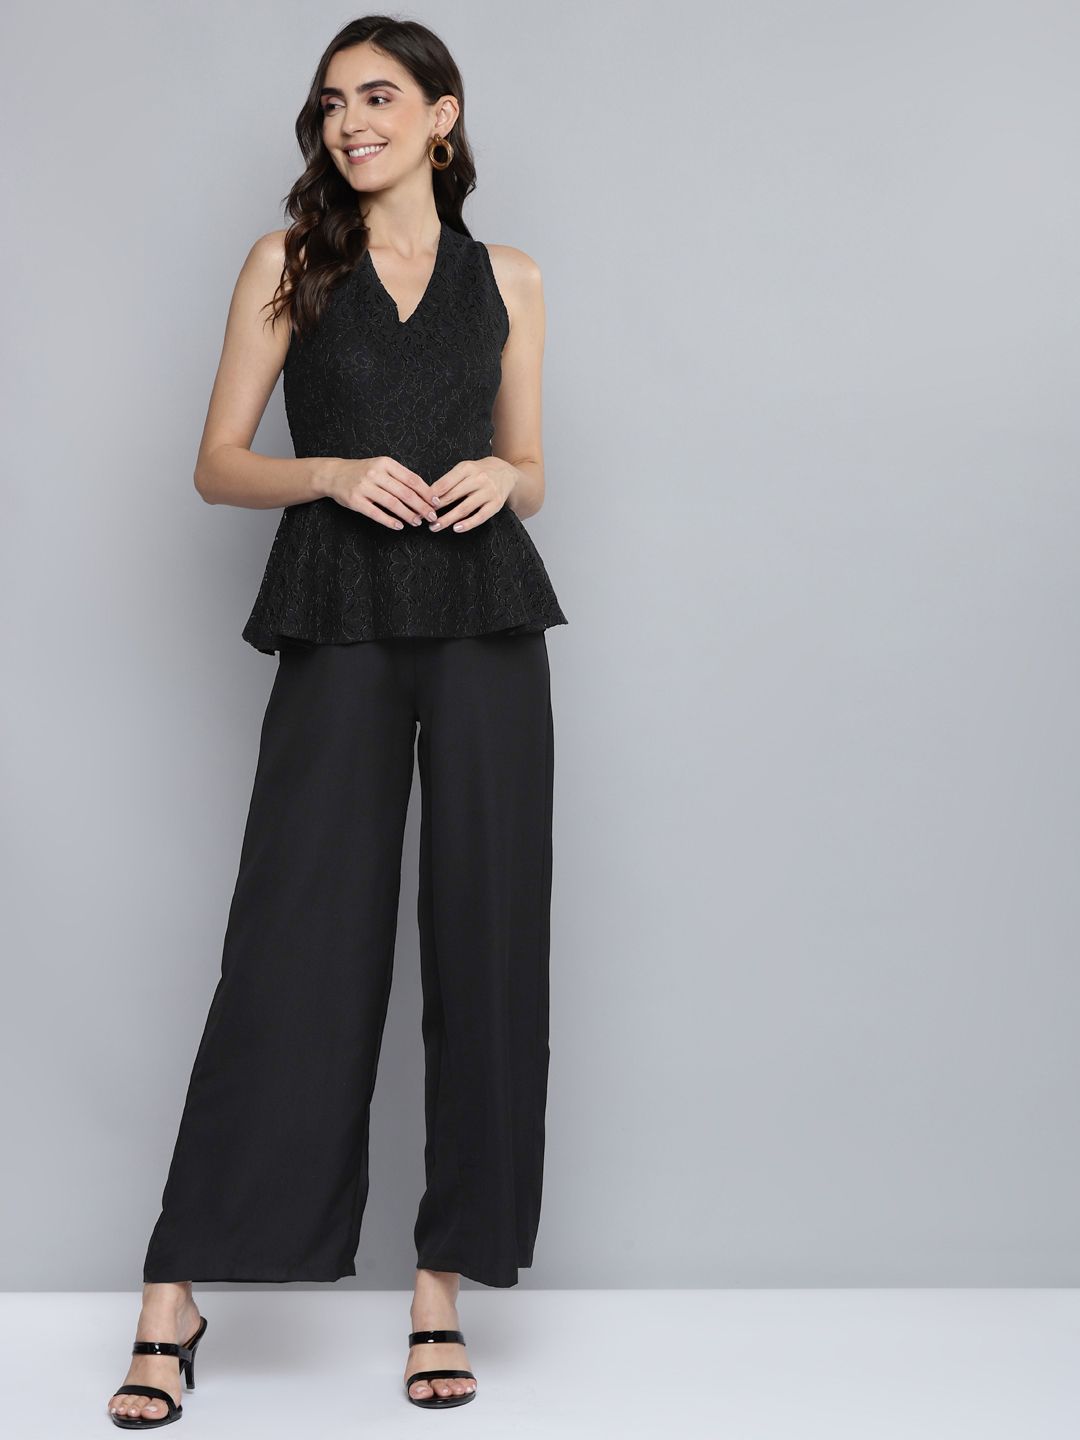 SASSAFRAS Black Lace Sleeveless Peplum Jumpsuit Price in India